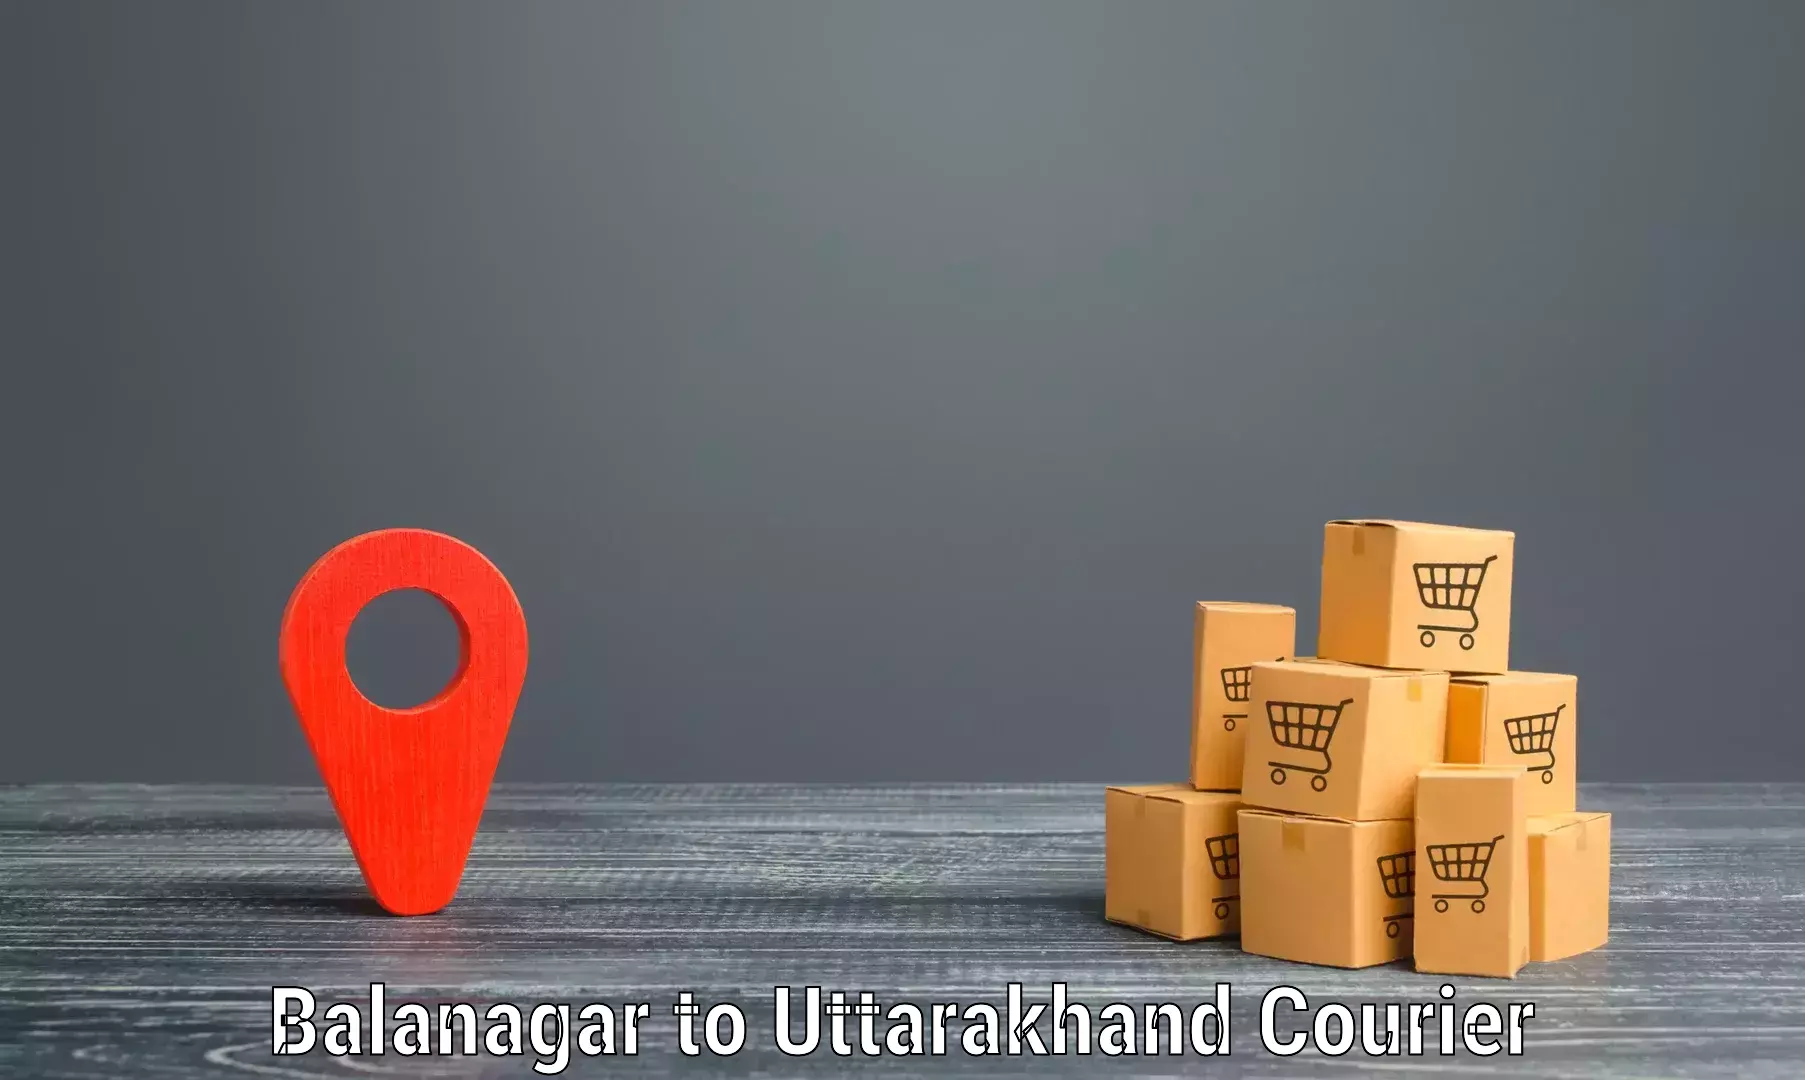 Punctual parcel services Balanagar to Almora